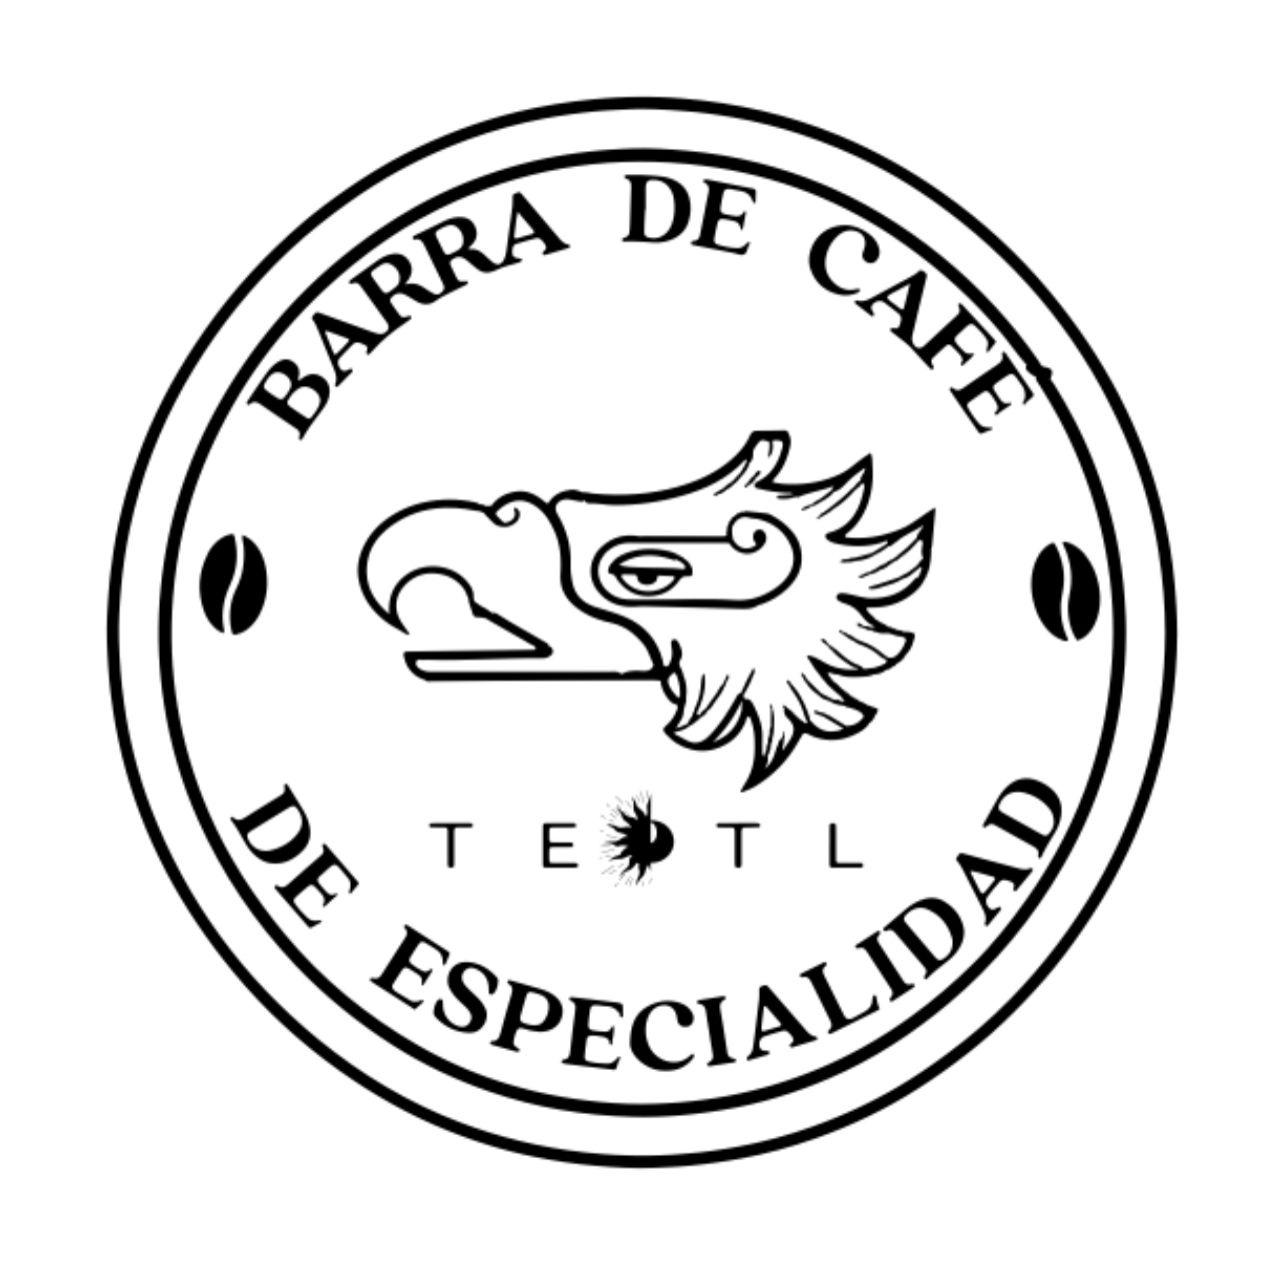 Teotl Barra de cafe de especialidad 